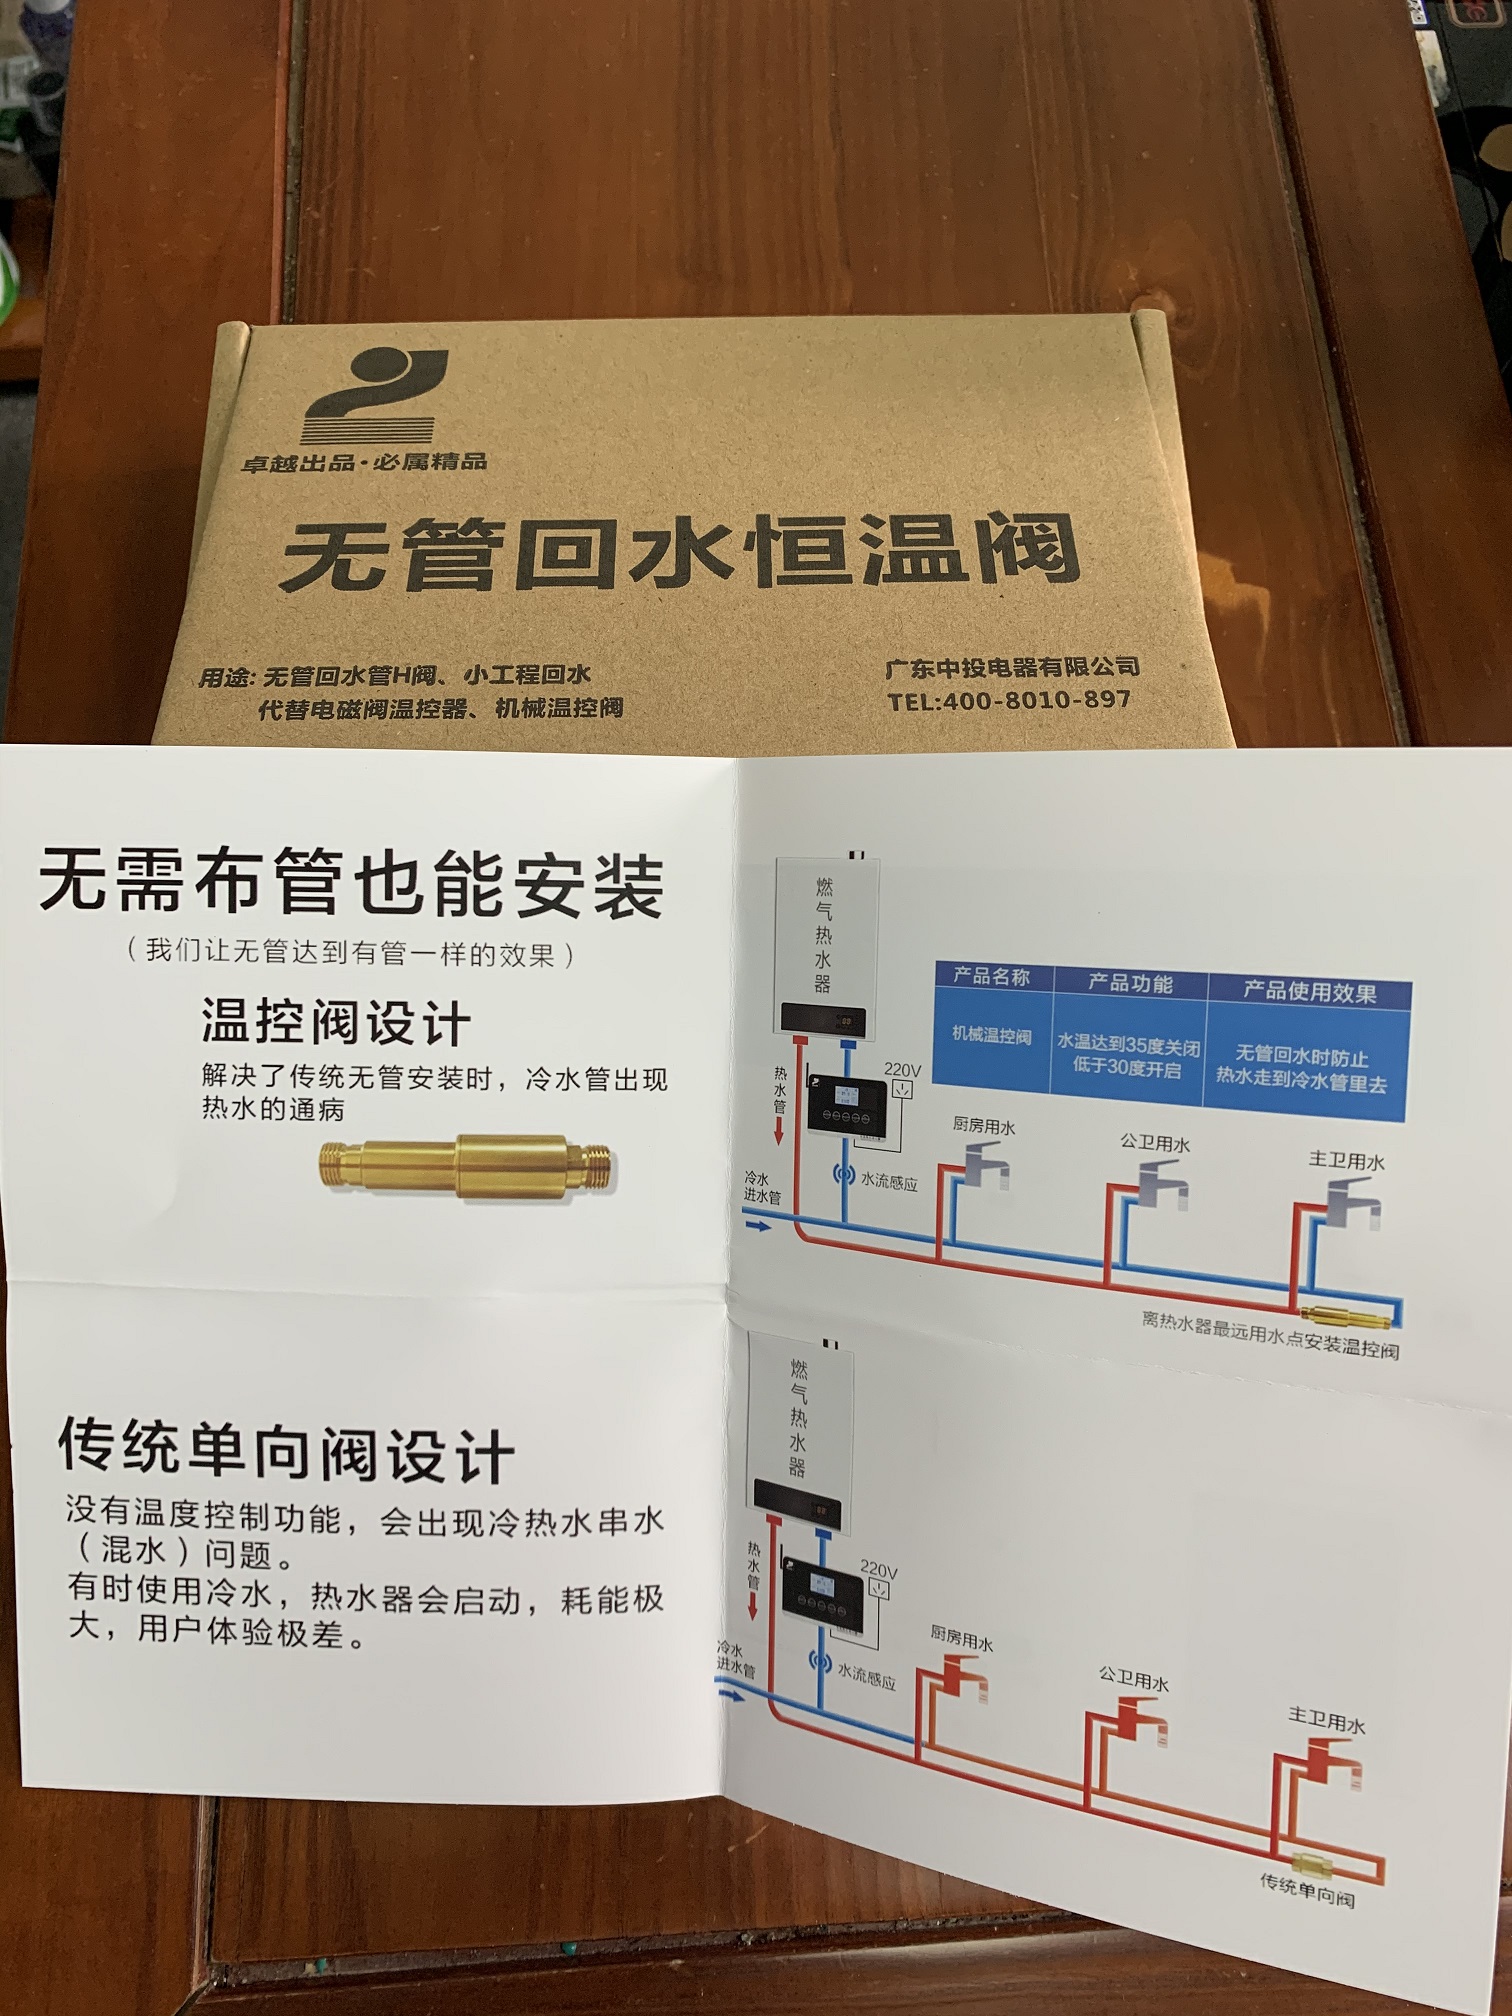 热水器H阀专利在广东中投电器-广东中投电器有限公司